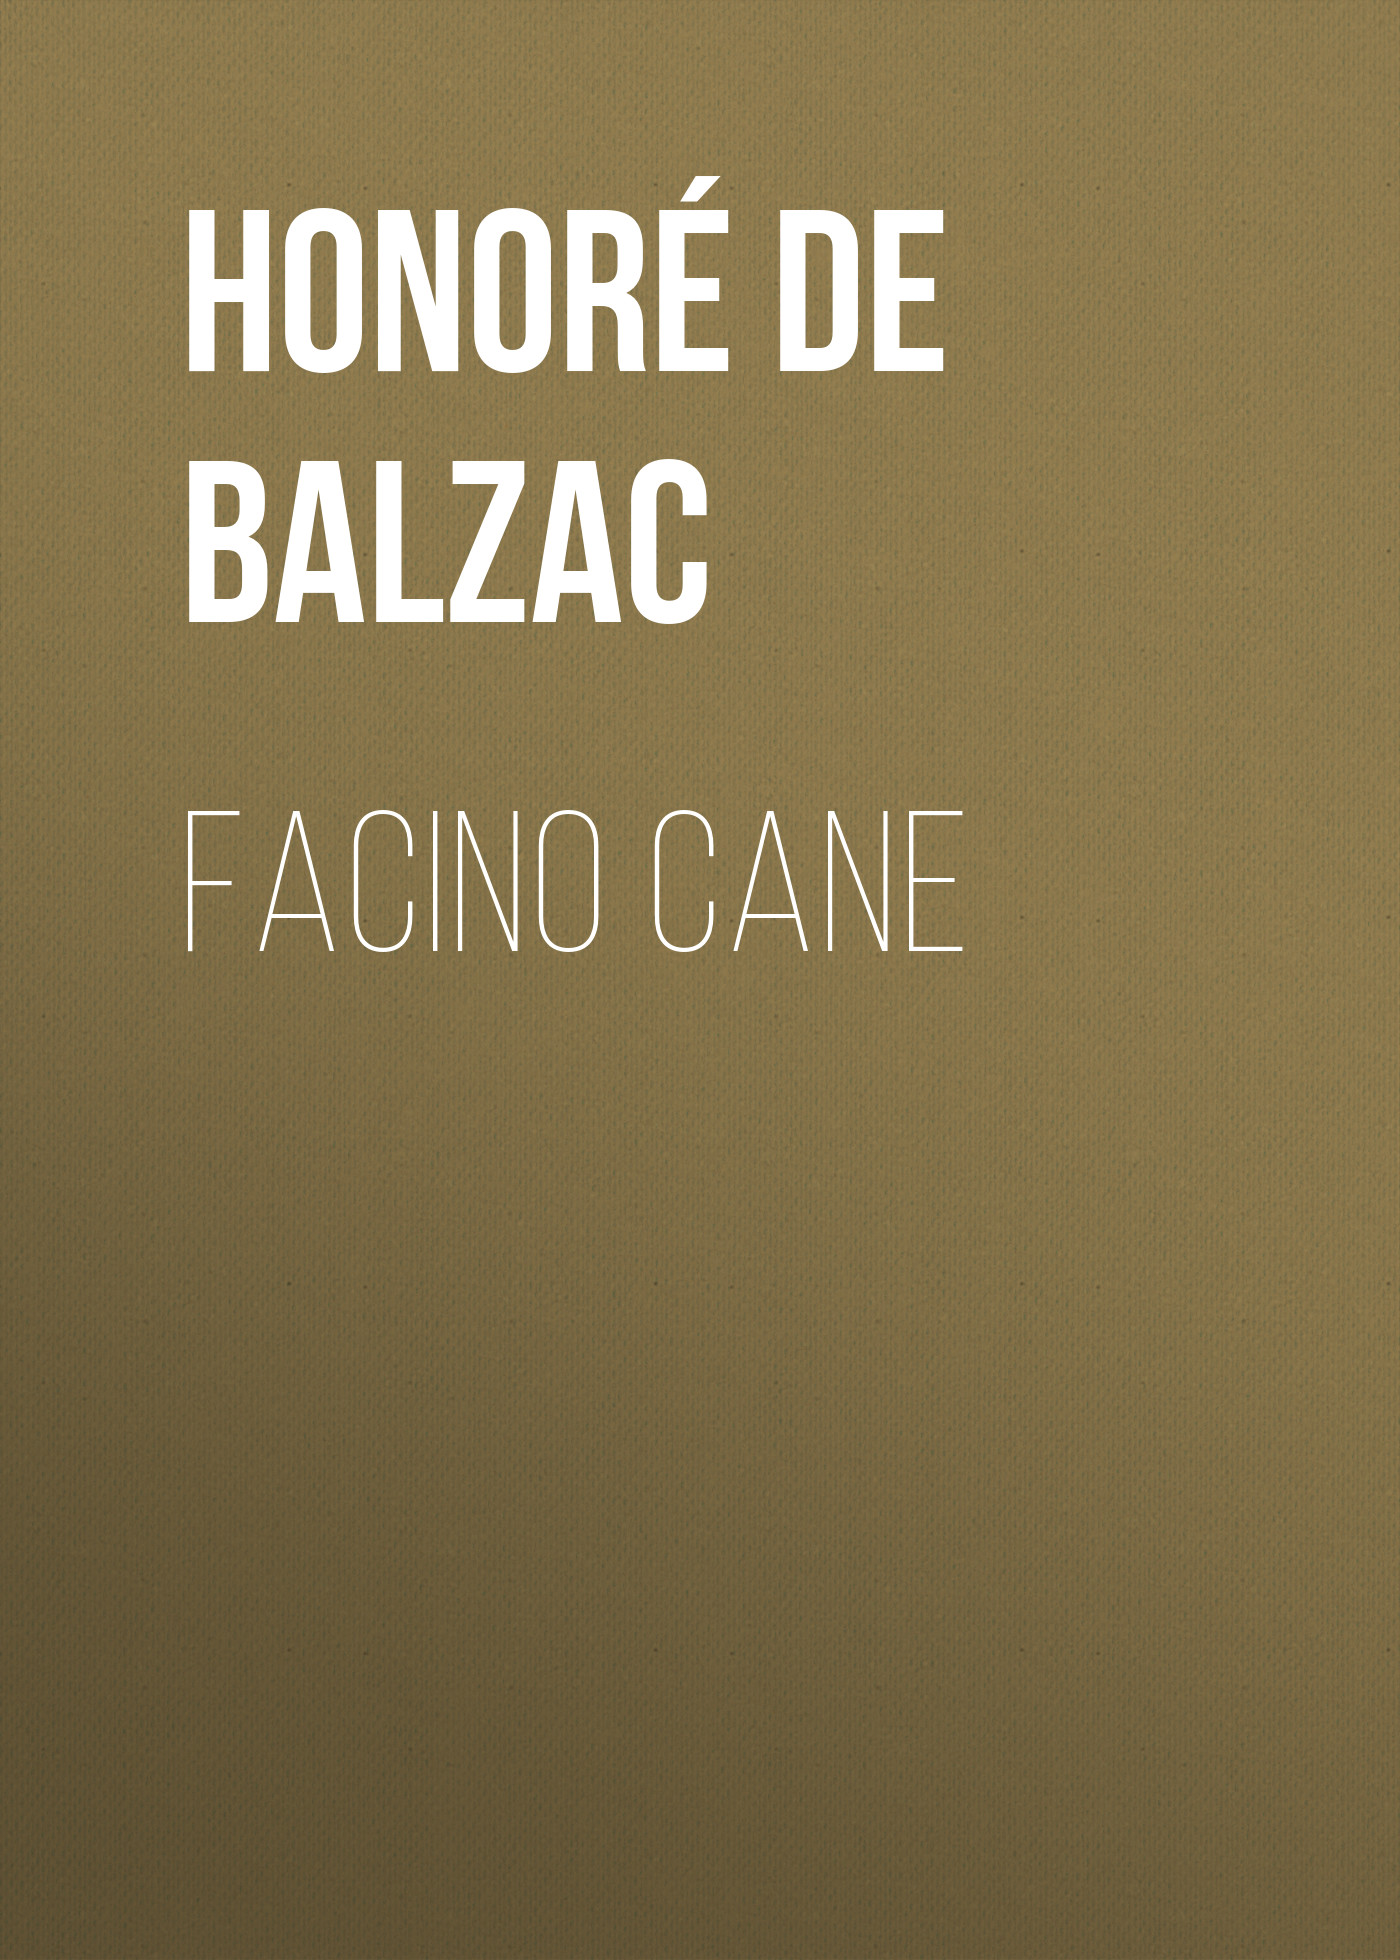 Книга Facino Cane из серии , созданная Honoré Balzac, может относится к жанру Литература 19 века, Зарубежная старинная литература, Зарубежная классика. Стоимость электронной книги Facino Cane с идентификатором 25020699 составляет 0 руб.